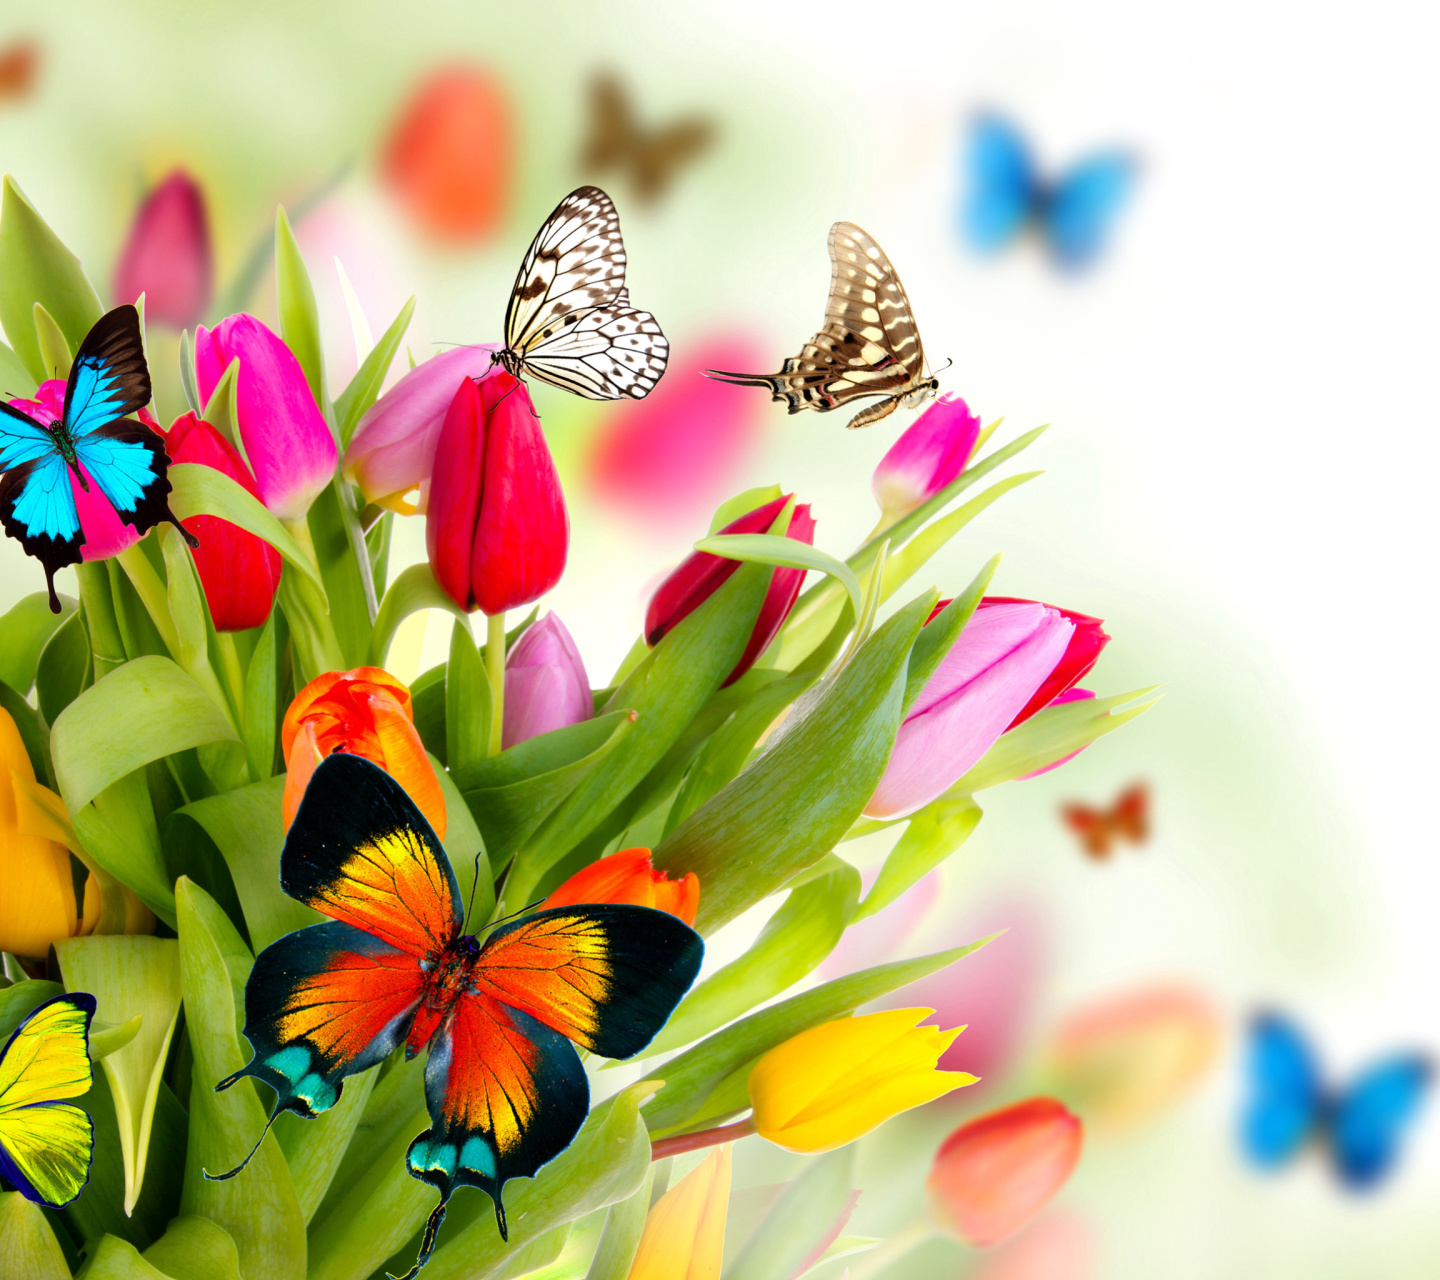 Tulips and Butterflies screenshot #1 1440x1280